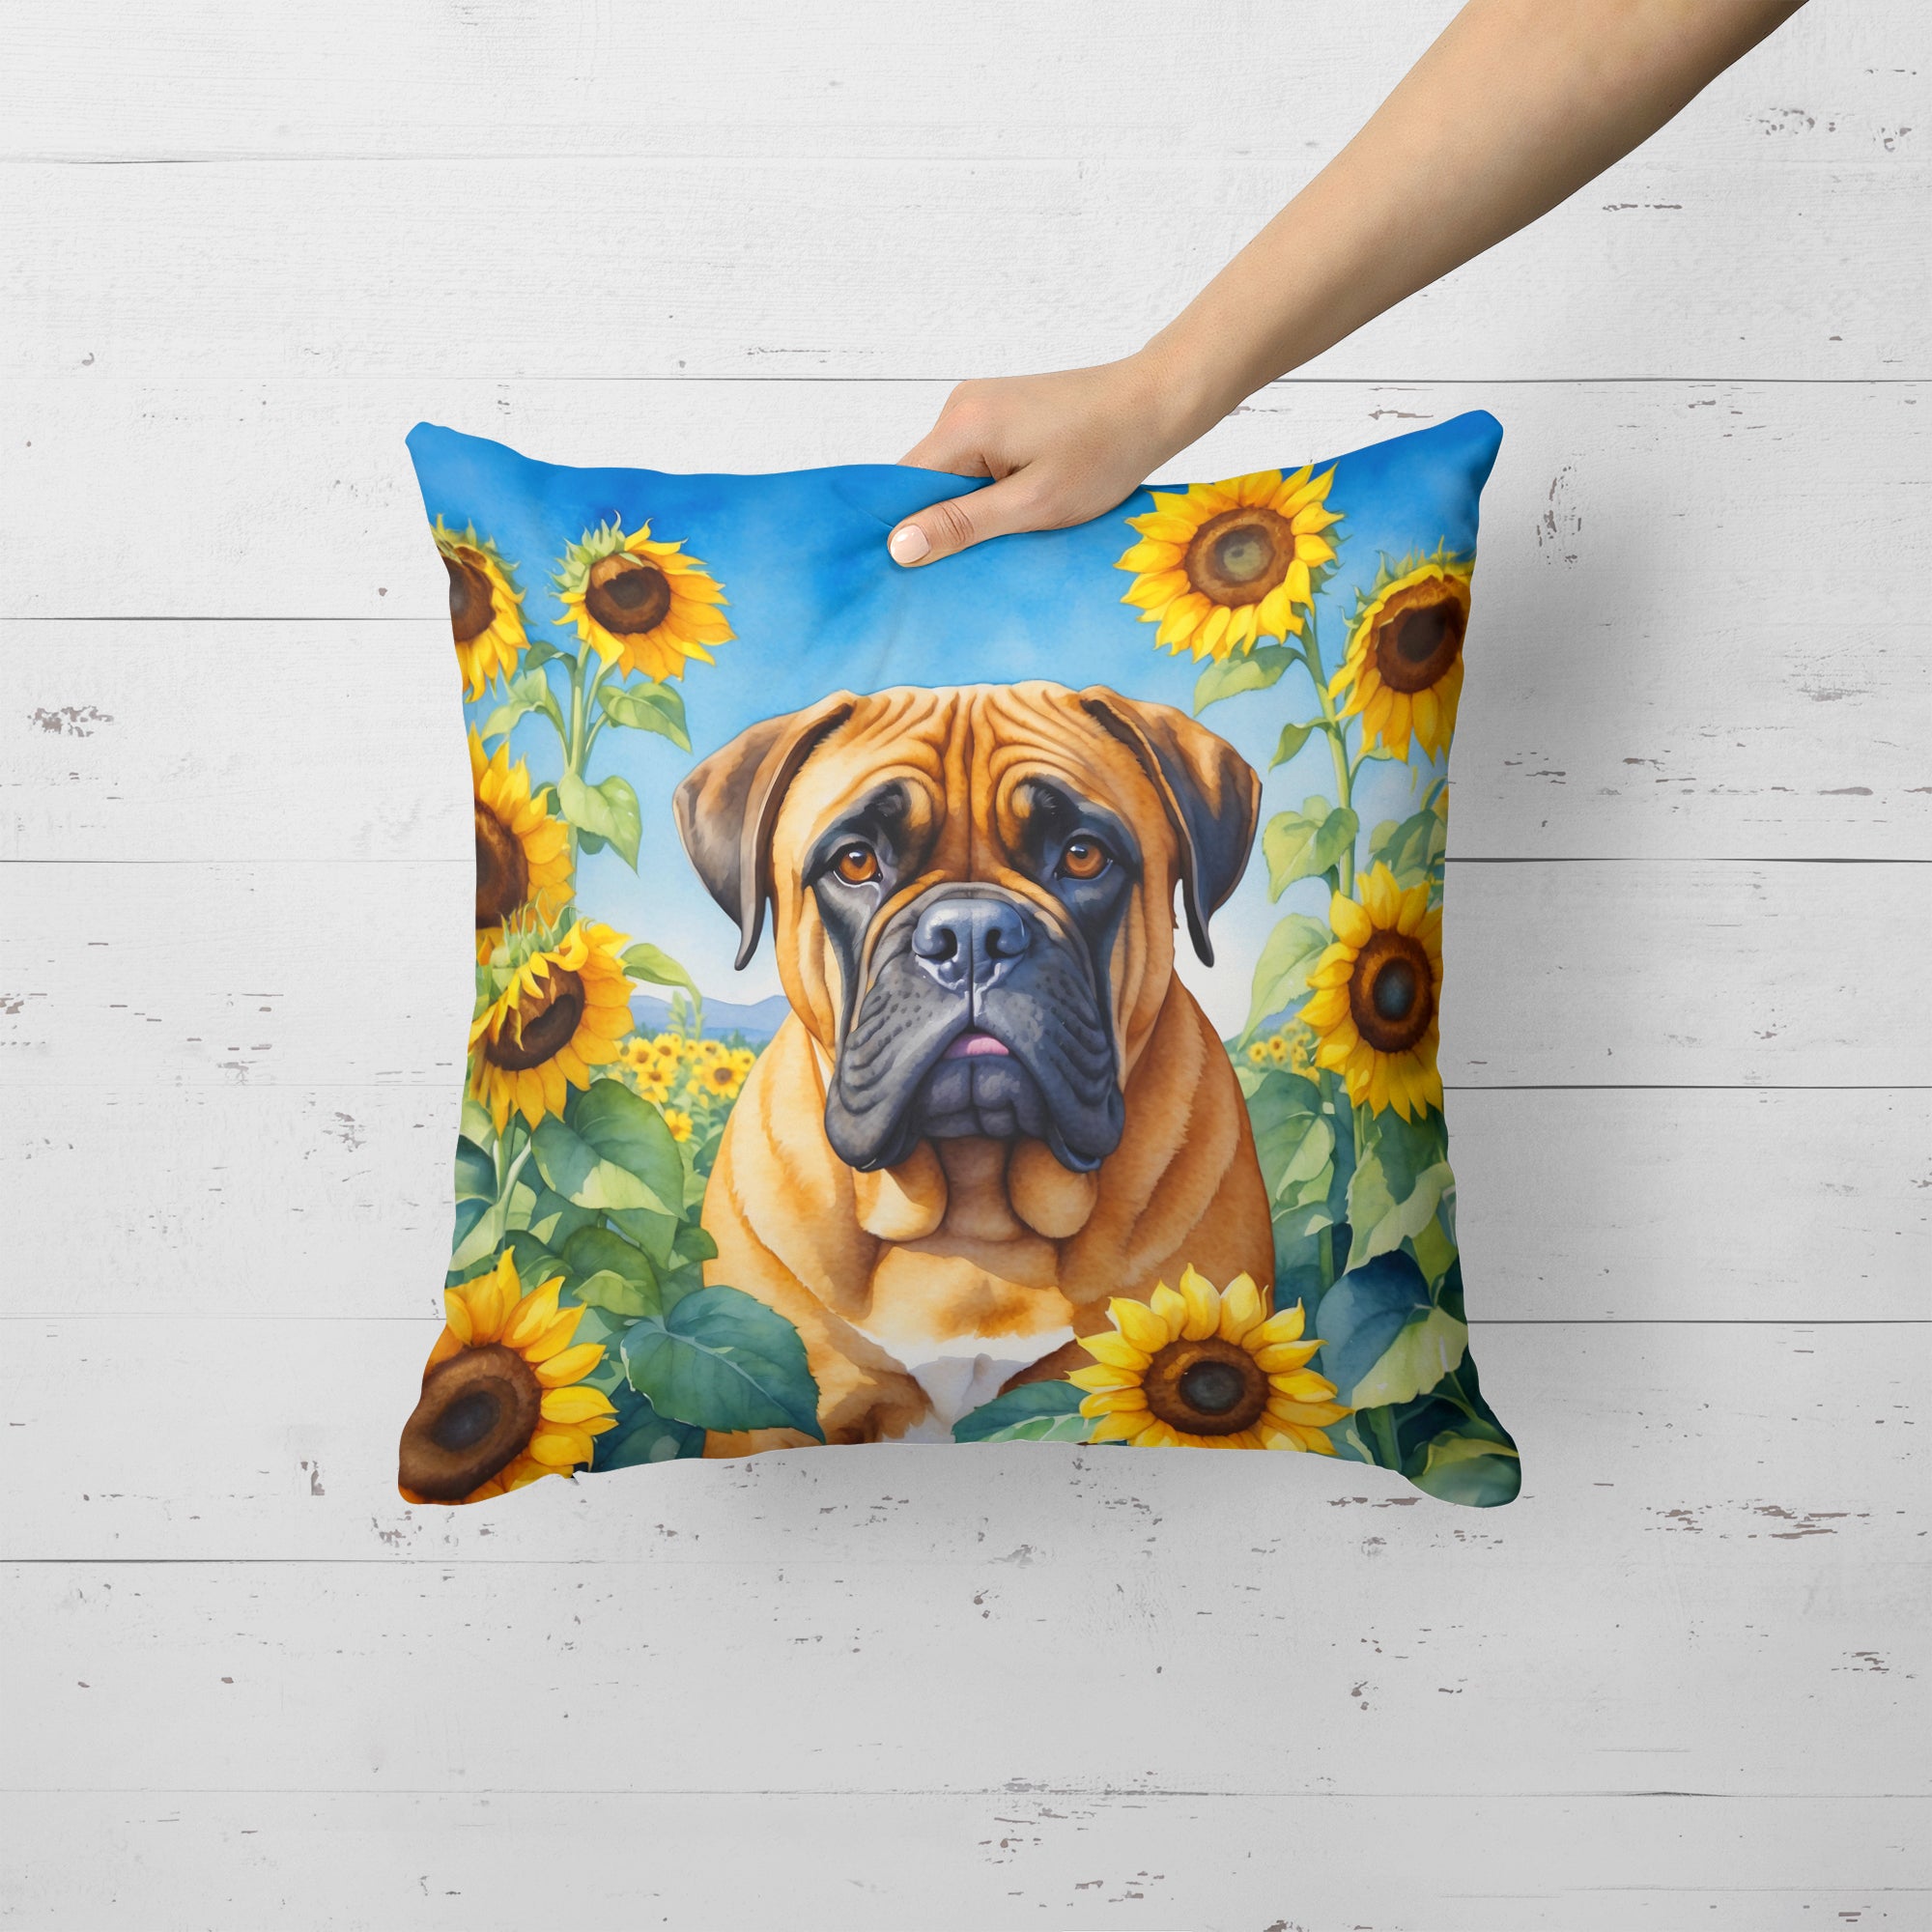 Buy this Bullmastiff in Sunflowers Throw Pillow